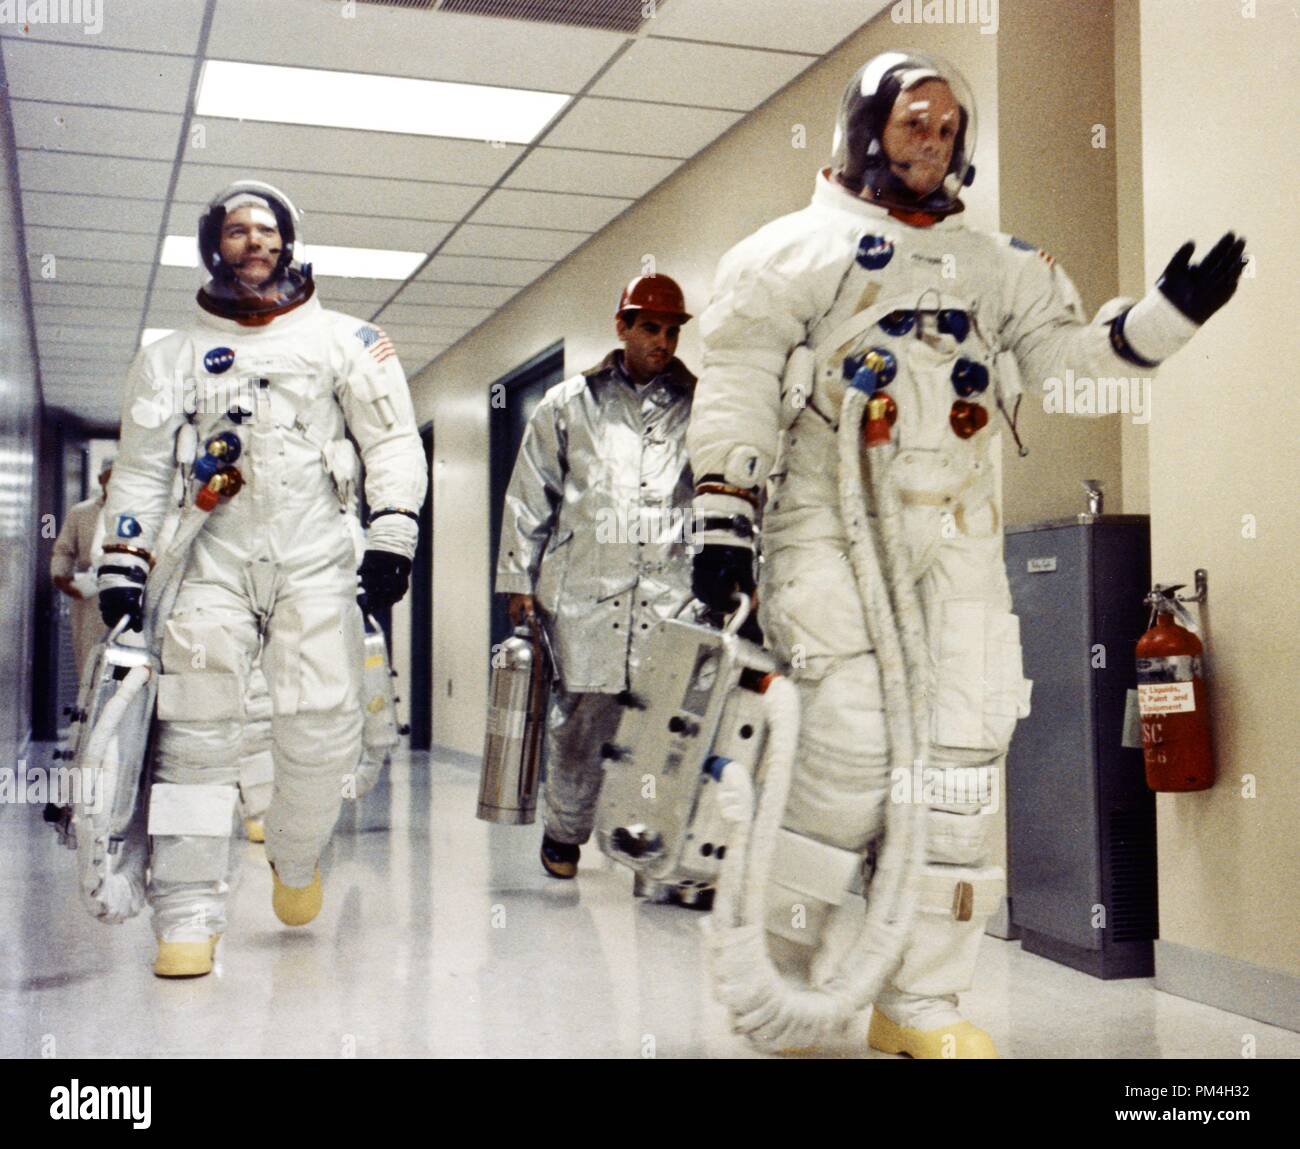 Apollo-11-Kommandant Neil A Armstrong wellen Gratulanten im Flur des bemannte Raumfahrzeuge Betriebsgebäude, wie Er und Michael Collins und Edwin E. Aldrin Jr. vorbereiten zu Komplexen 39 Start transportiert ein für die erste bemannte Mondlandung Mission sein. Juli 16, 1969 Datei Referenz Nr. 1003 199 THA Stockfoto